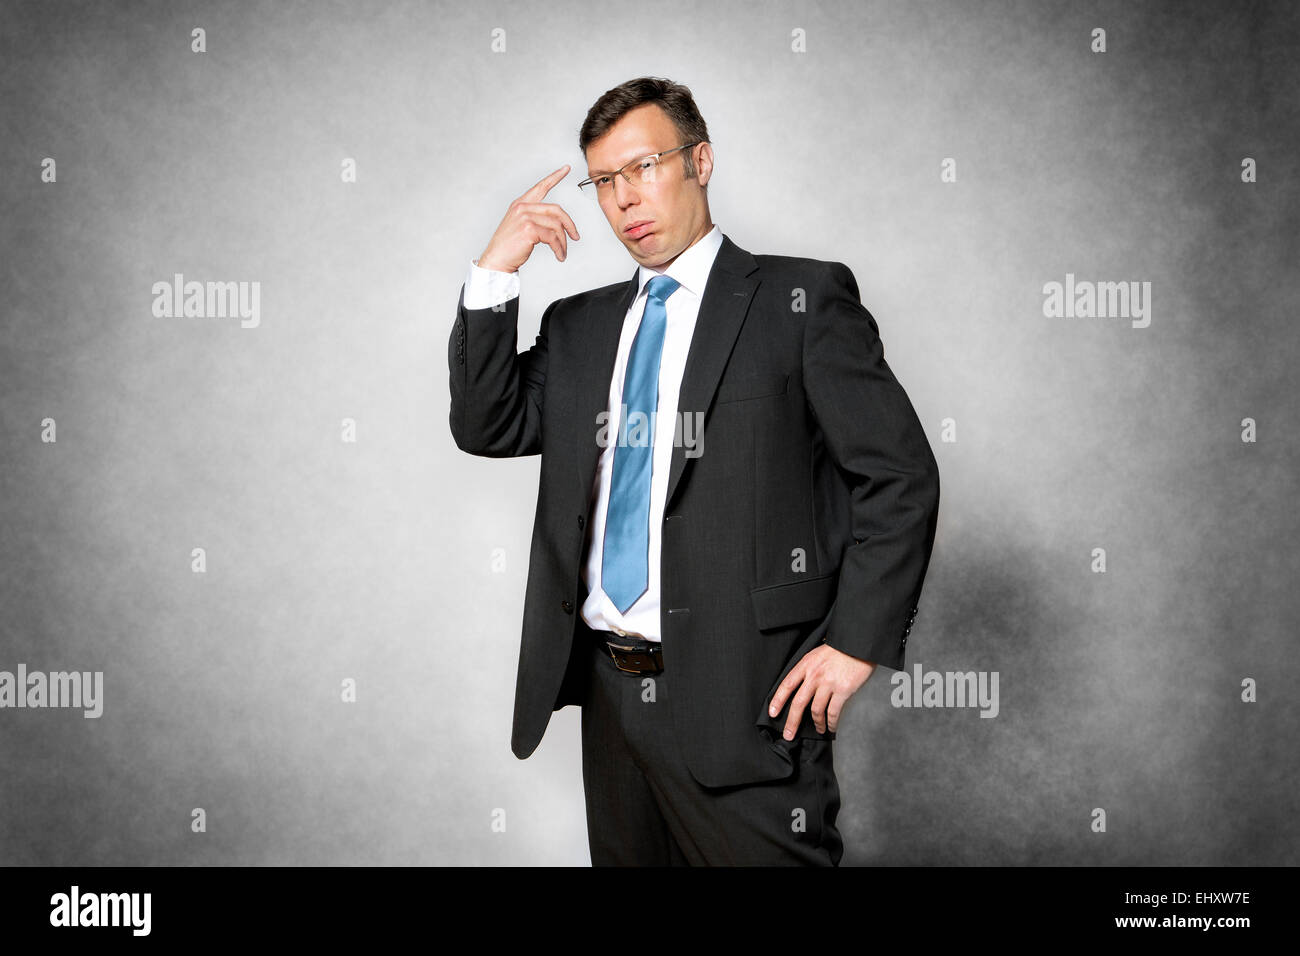 Immagine di presuntuoso business man in abito scuro puntando il dito a sua testa Foto Stock